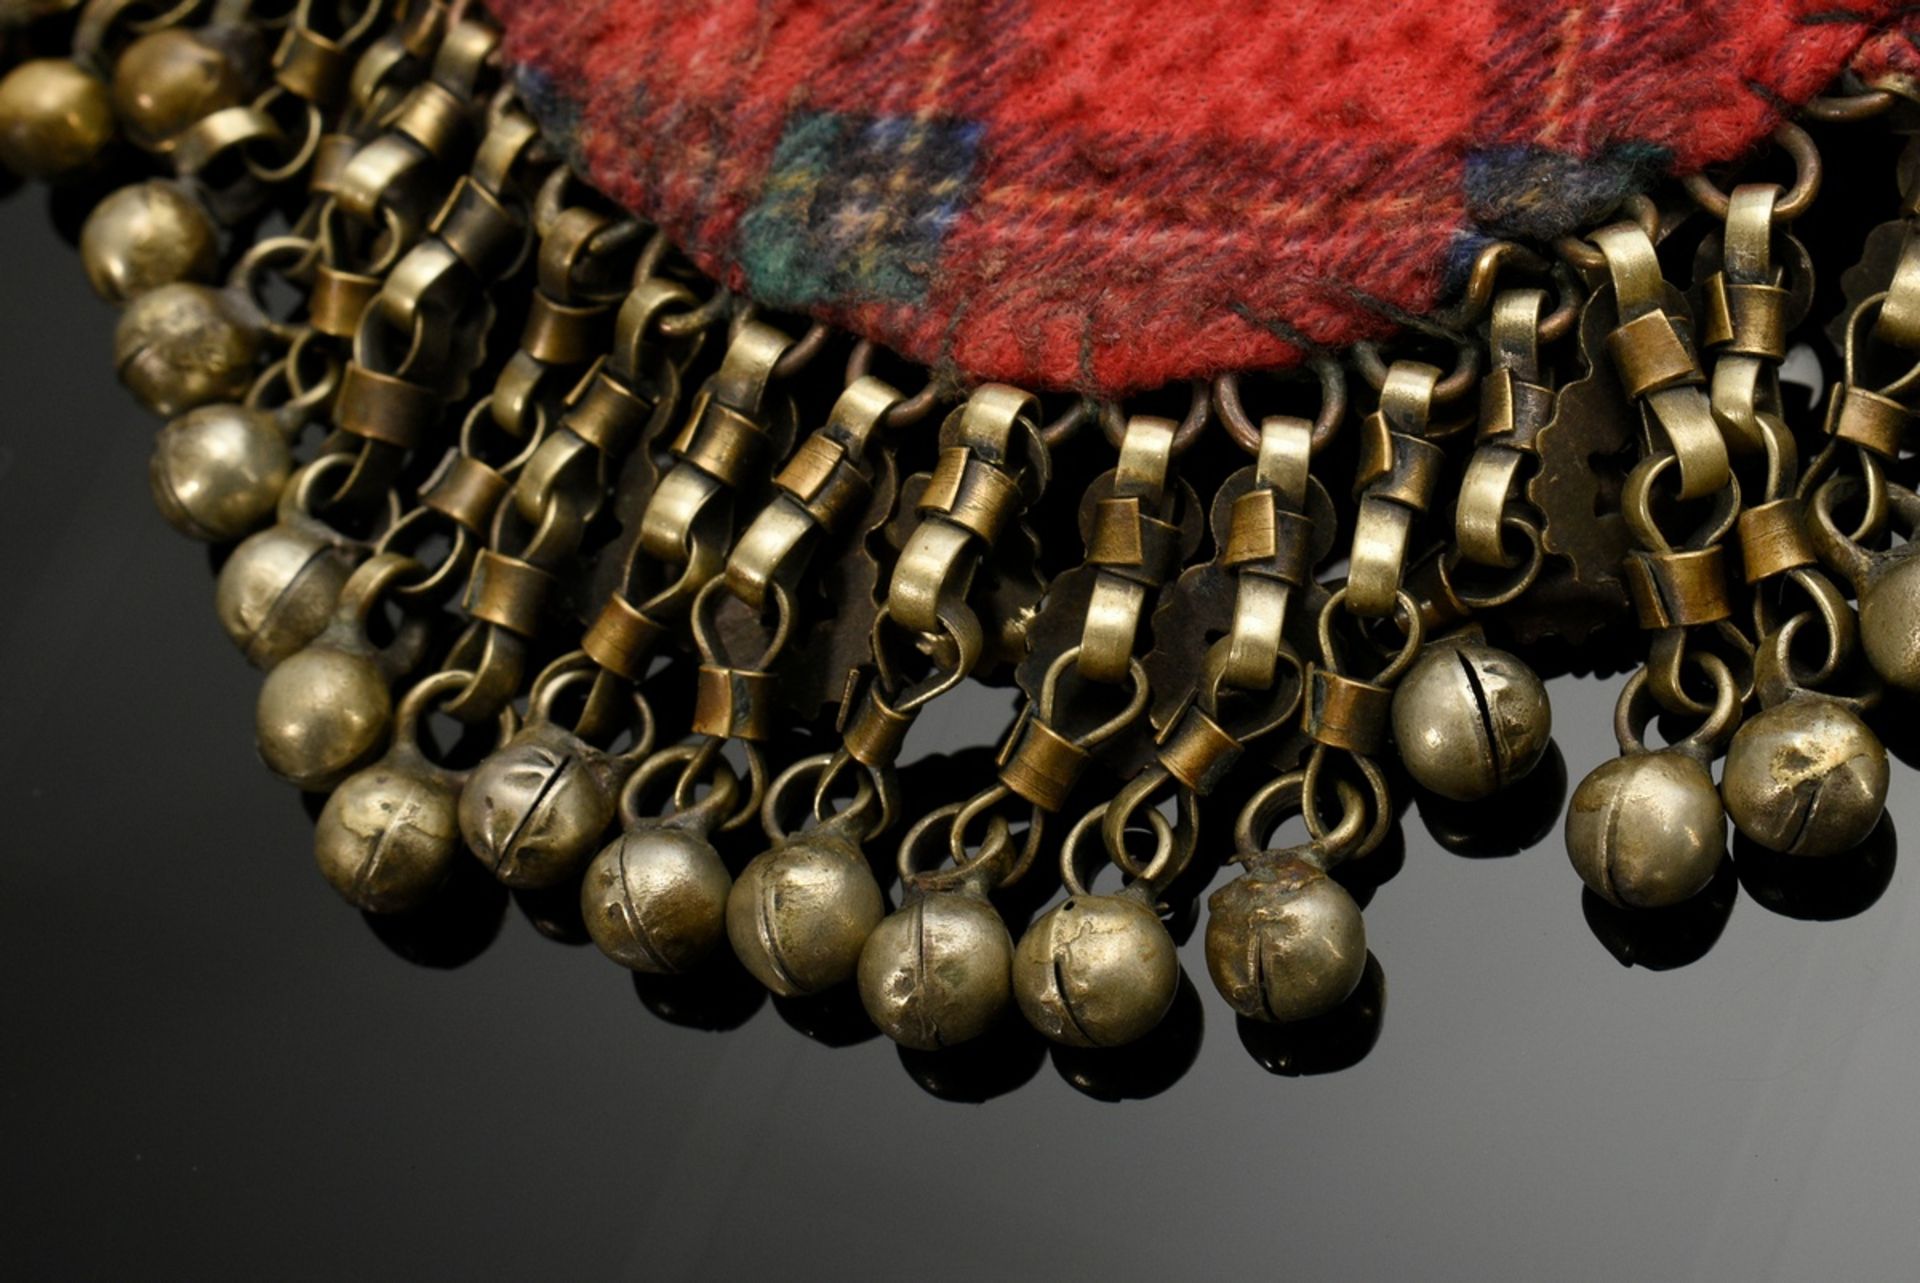 2 Diverse Teile afghanischer Choker und Stirnschmuck mit Glassteinen, Plättchen und Perlen auf Stof - Bild 7 aus 8